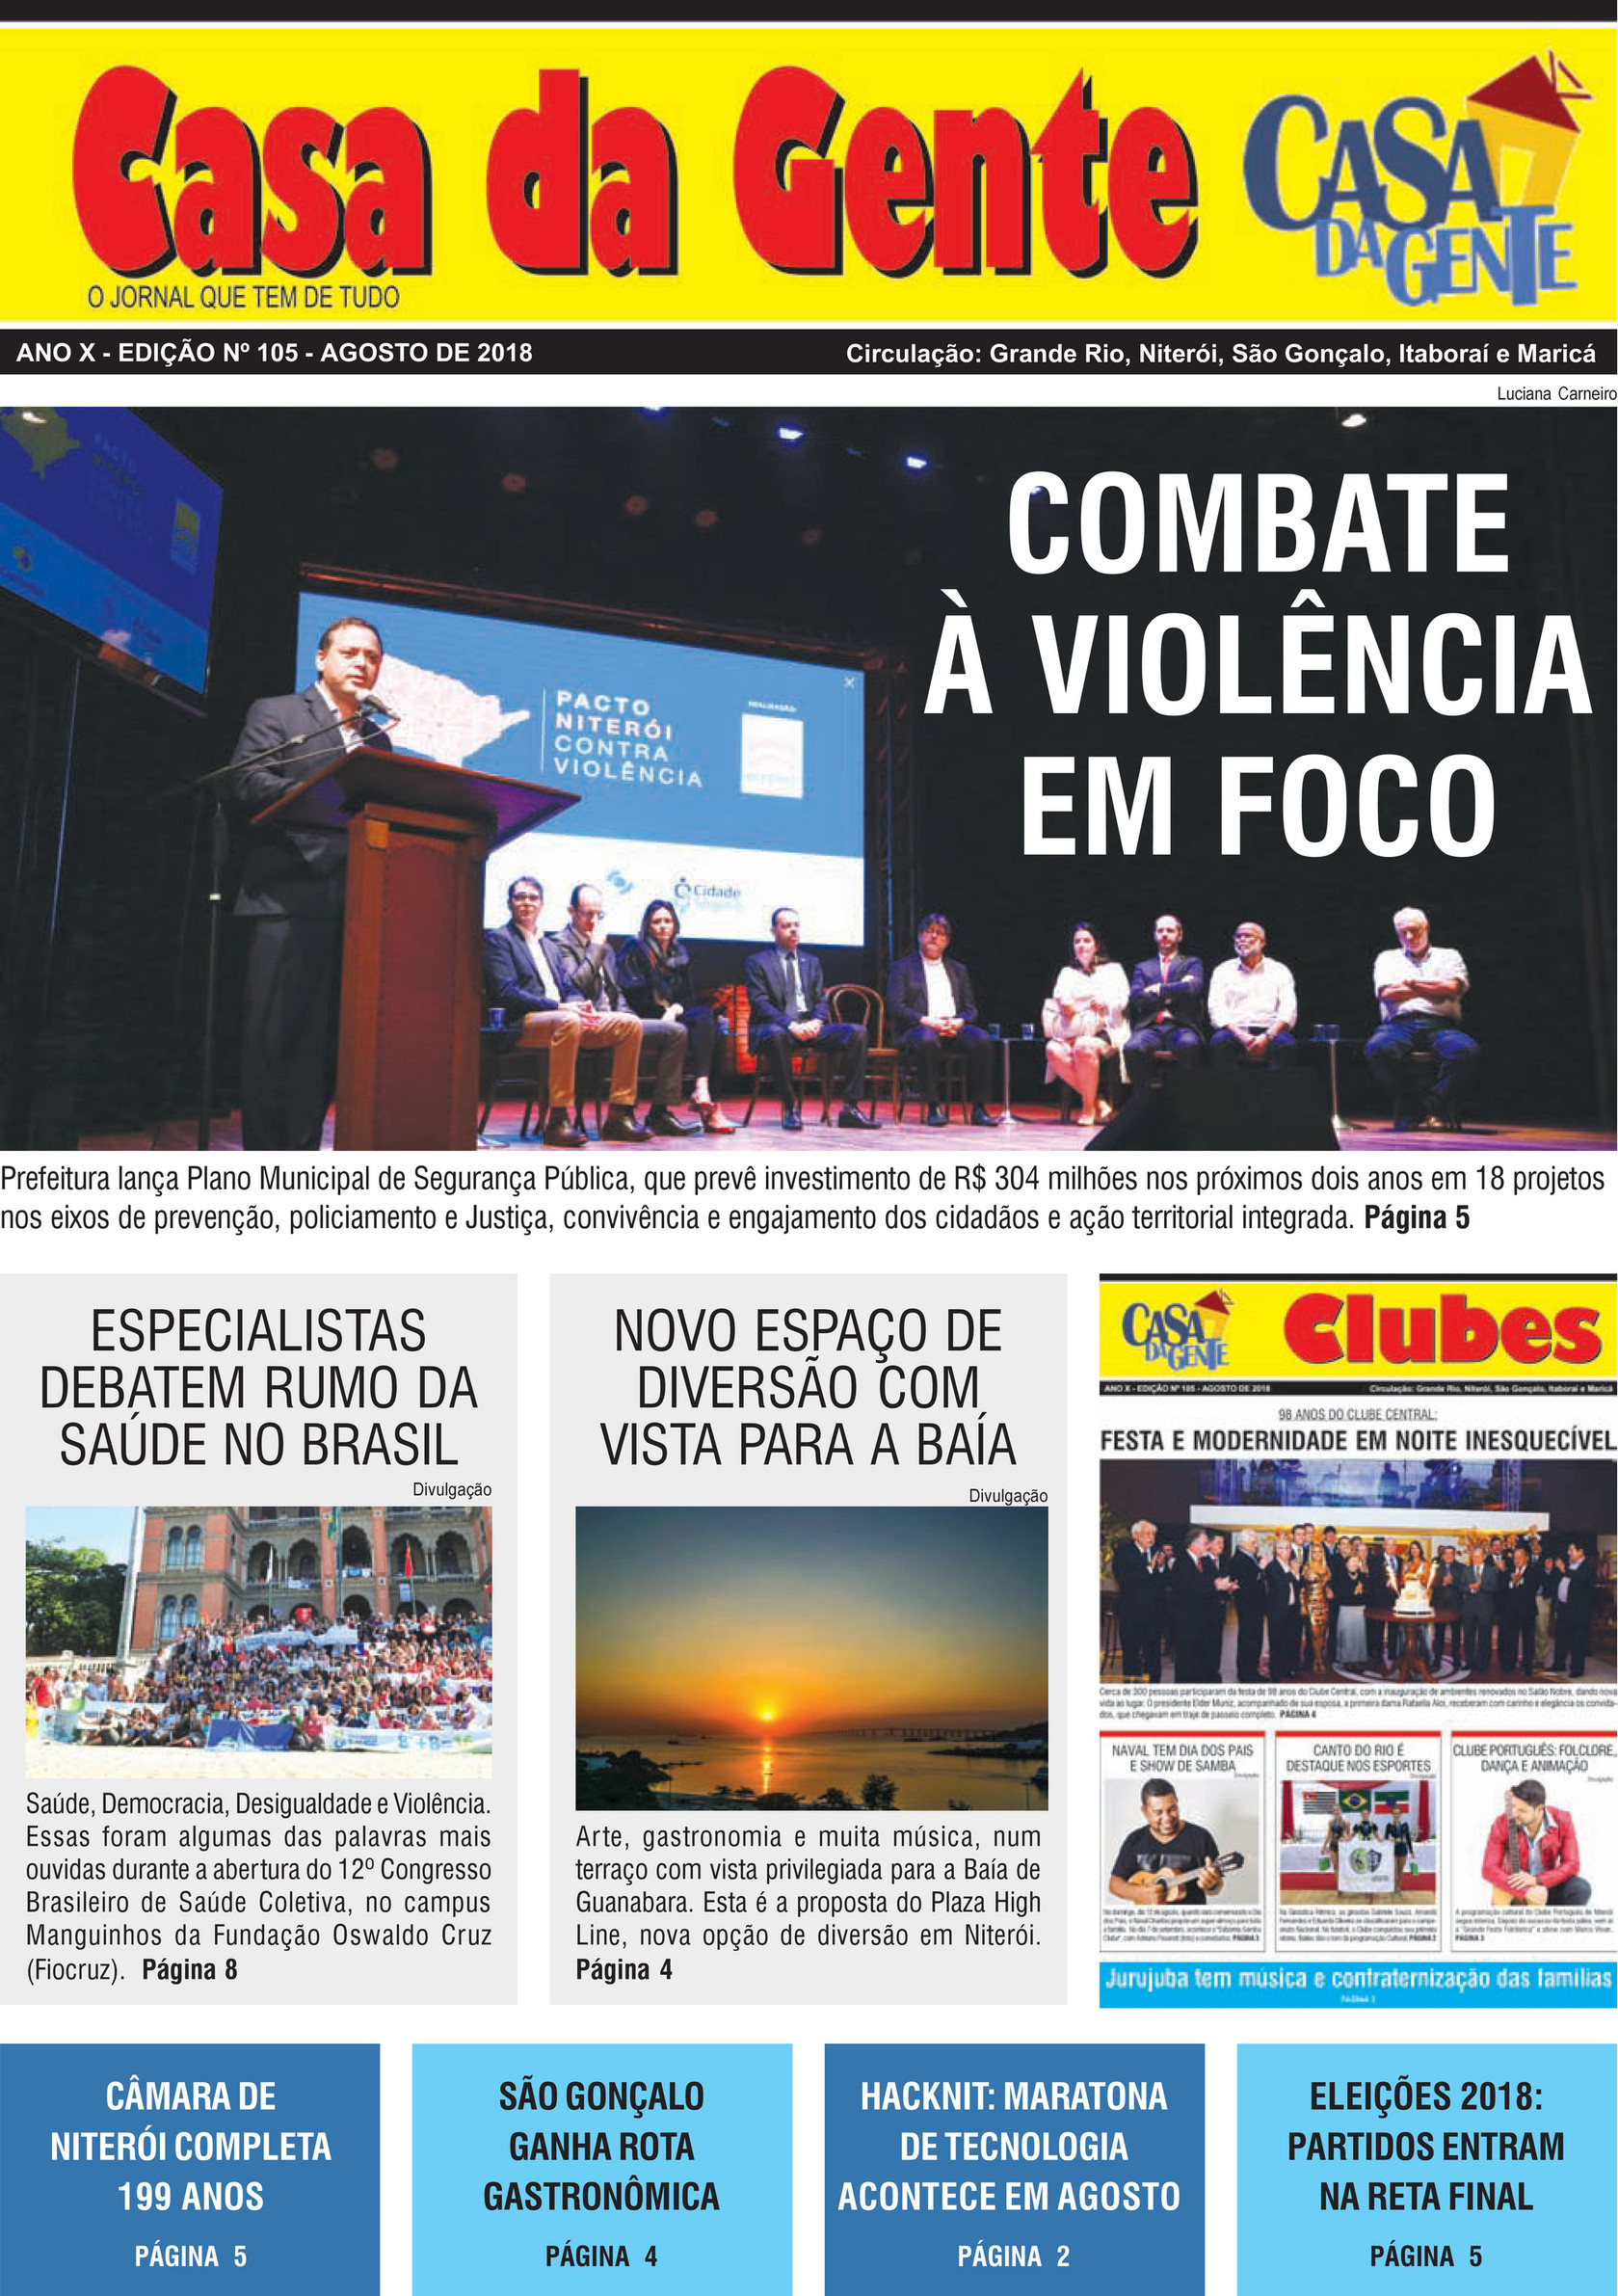 Jornal Casa da Gente: Clube Português de Niterói: Mais um ano de sucesso da  Quinta do Santoinho